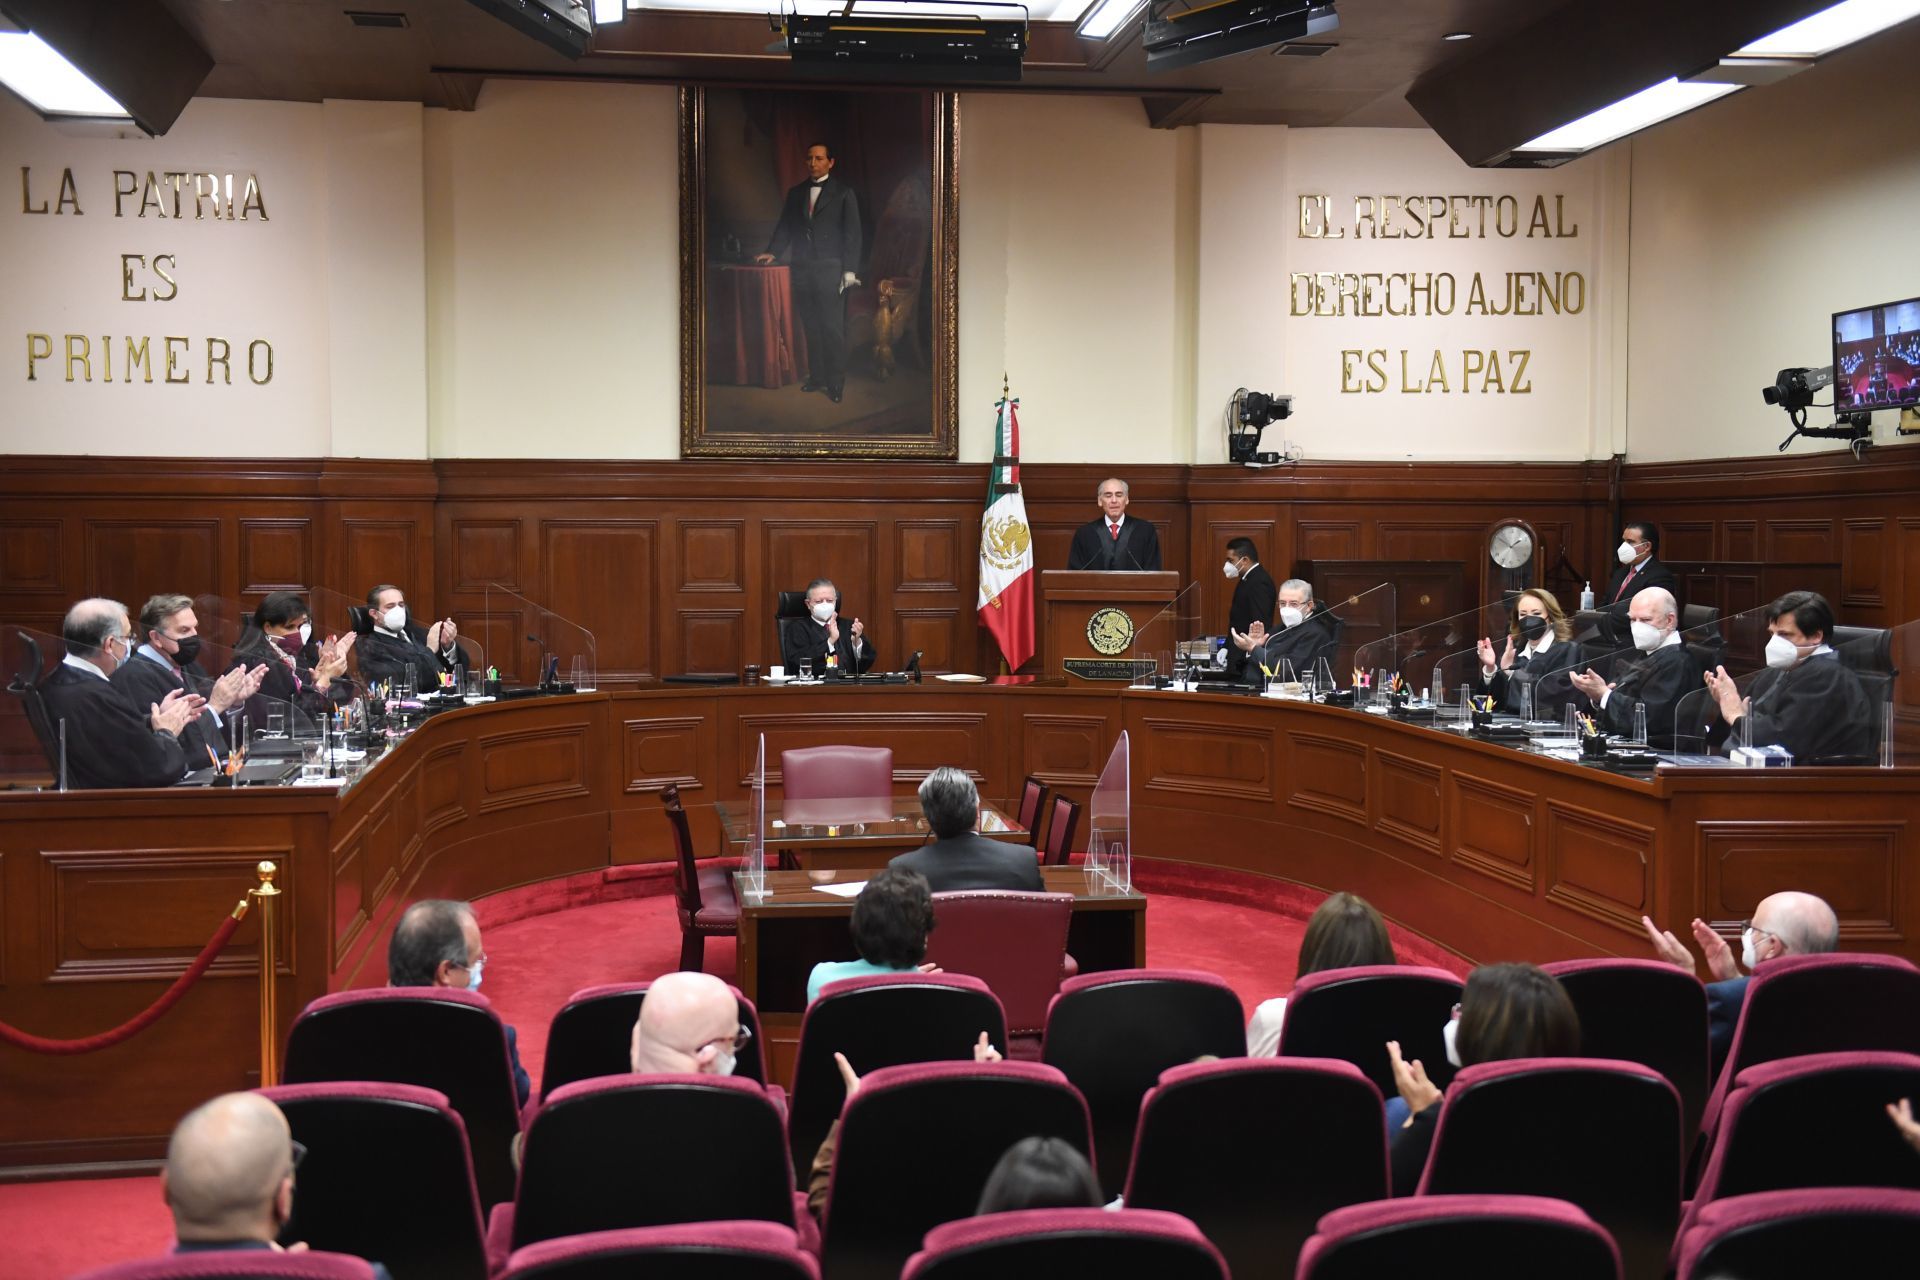 El pleno de la Suprema Corte de Justicia de la Nación (SCJN) despidió al ministro José Fernando Franco González Salas, quien pasa a situación de retiro. El ministro Arturo Zaldívar le entregó un reconocimiento.